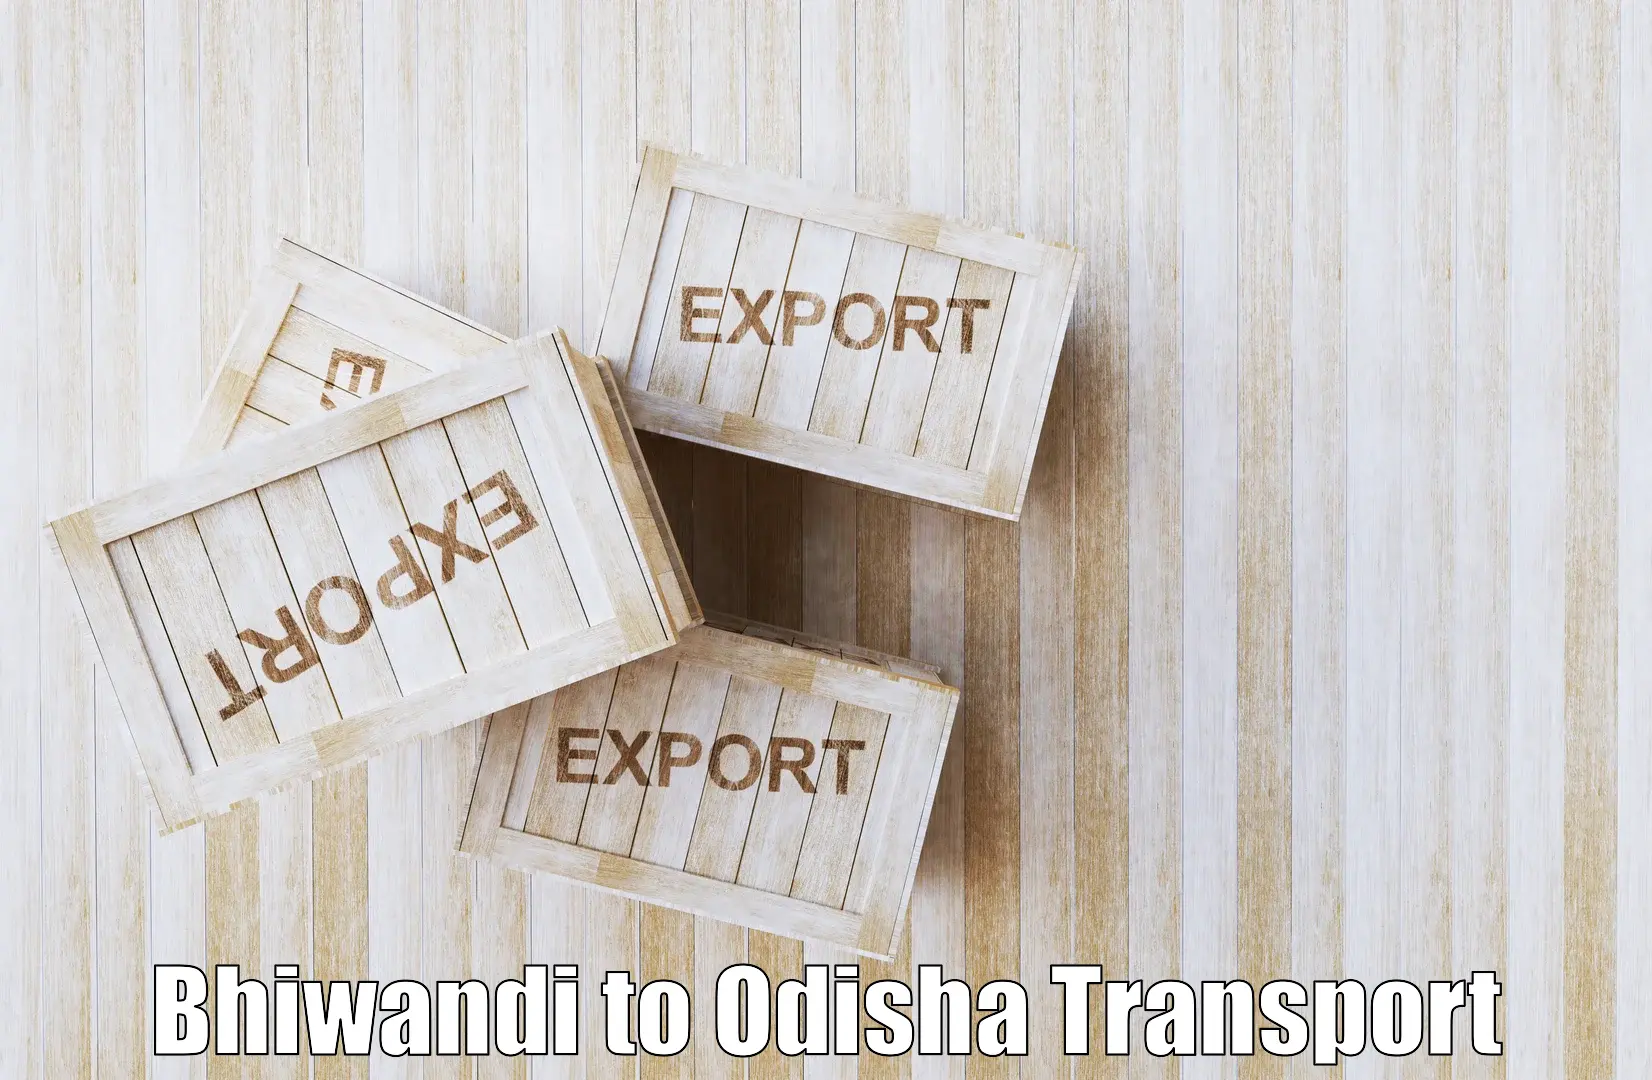 Land transport services Bhiwandi to Bhubaneswar